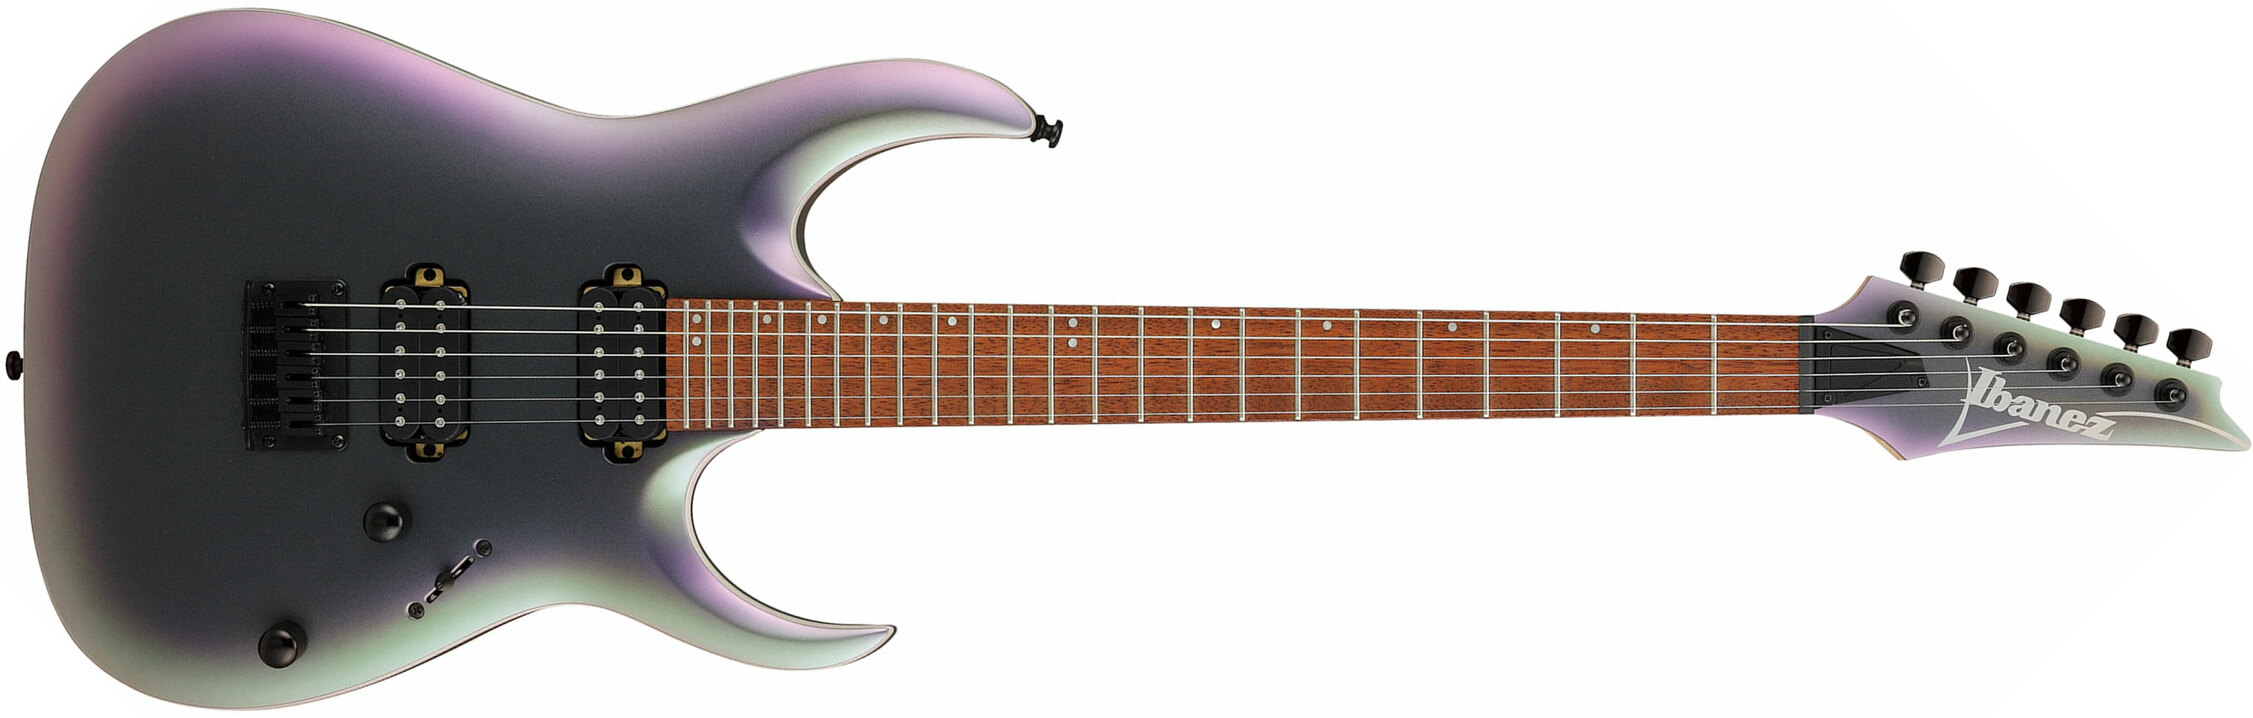 Ibanez Rga42ex Bam Standard Ht Hh Jat - Black Aurora Burst Matte - Elektrische gitaar in Str-vorm - Main picture